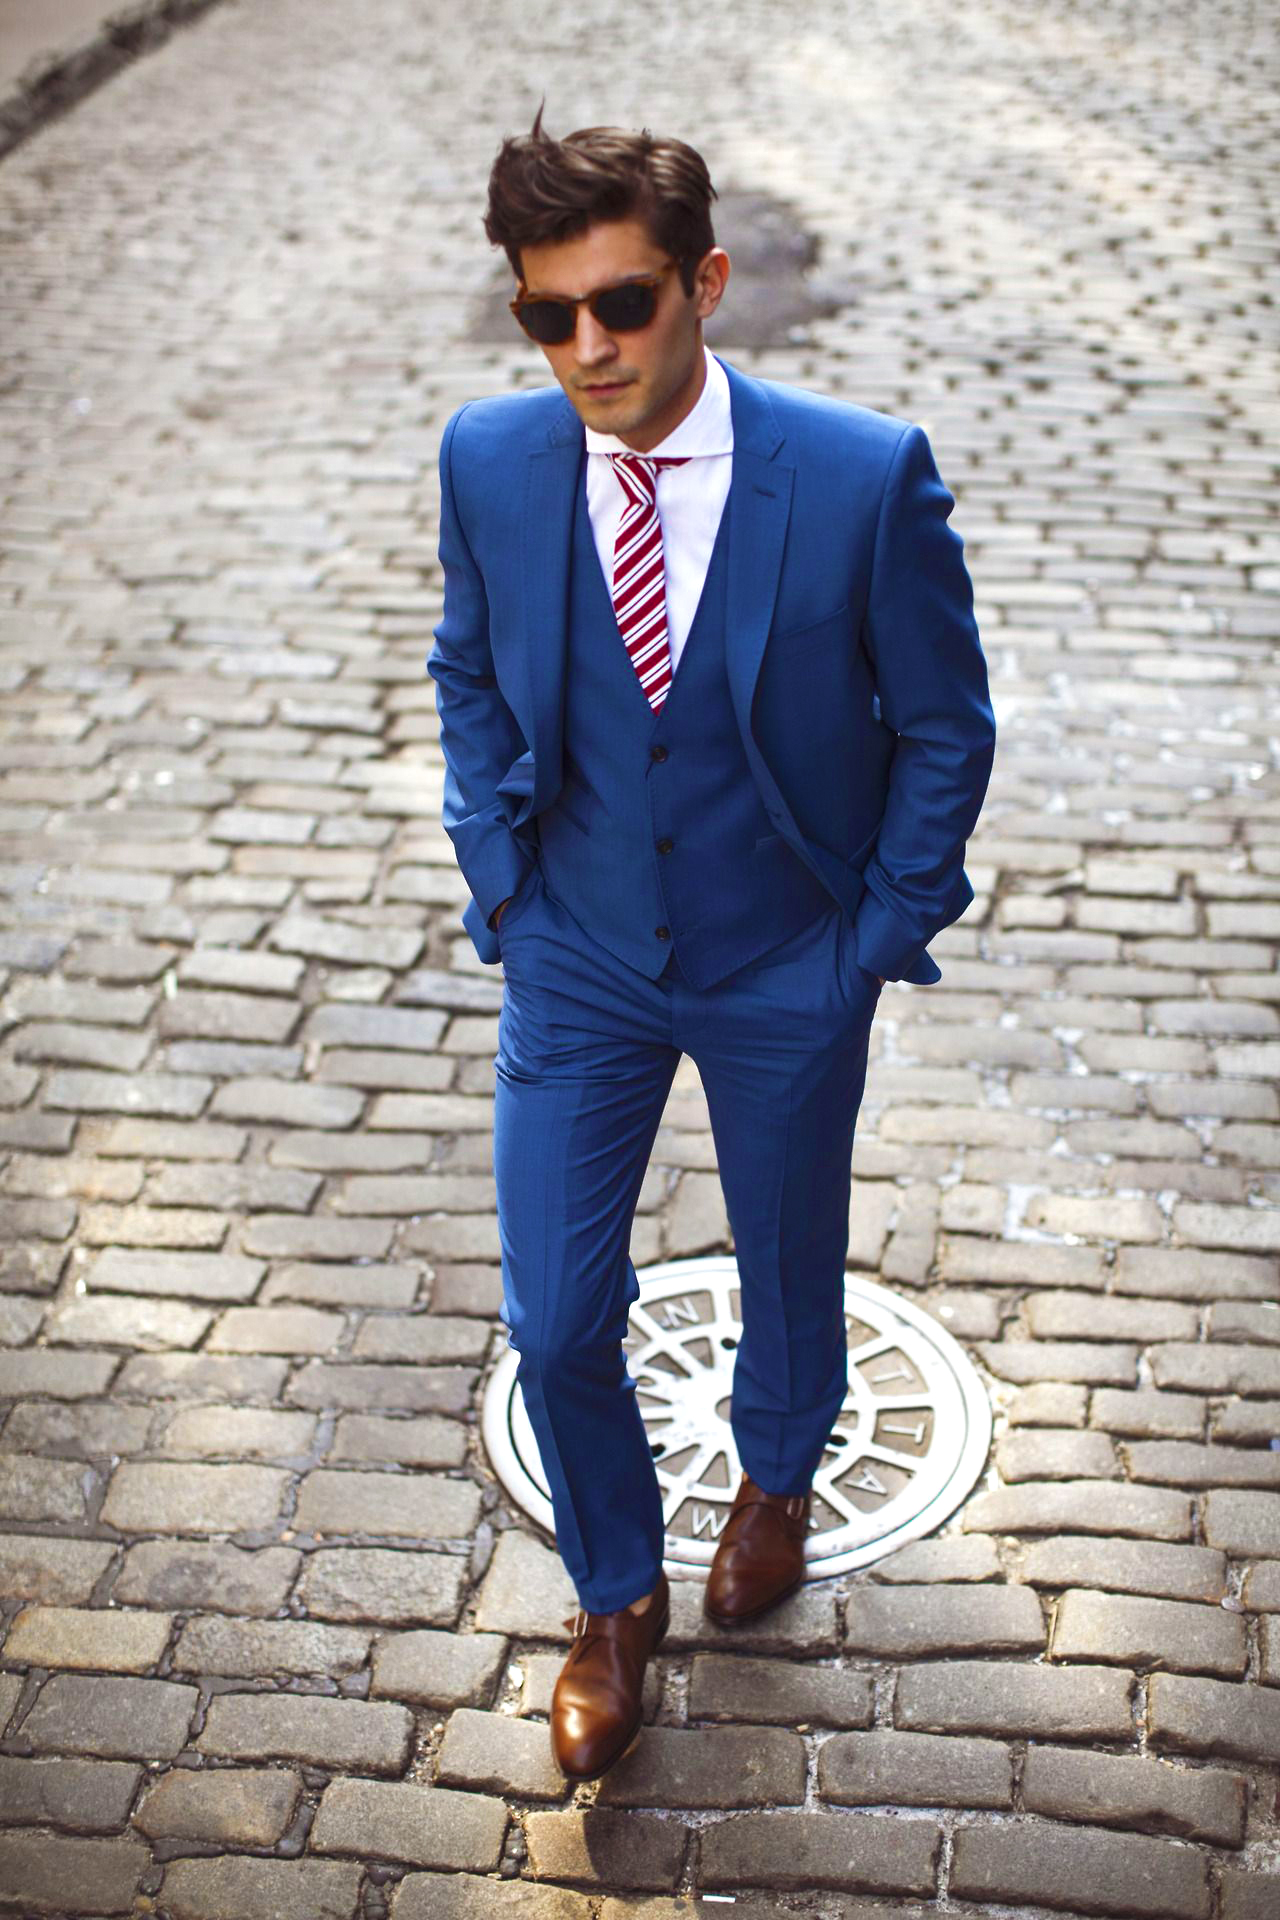 blue suit black shoes what color tie